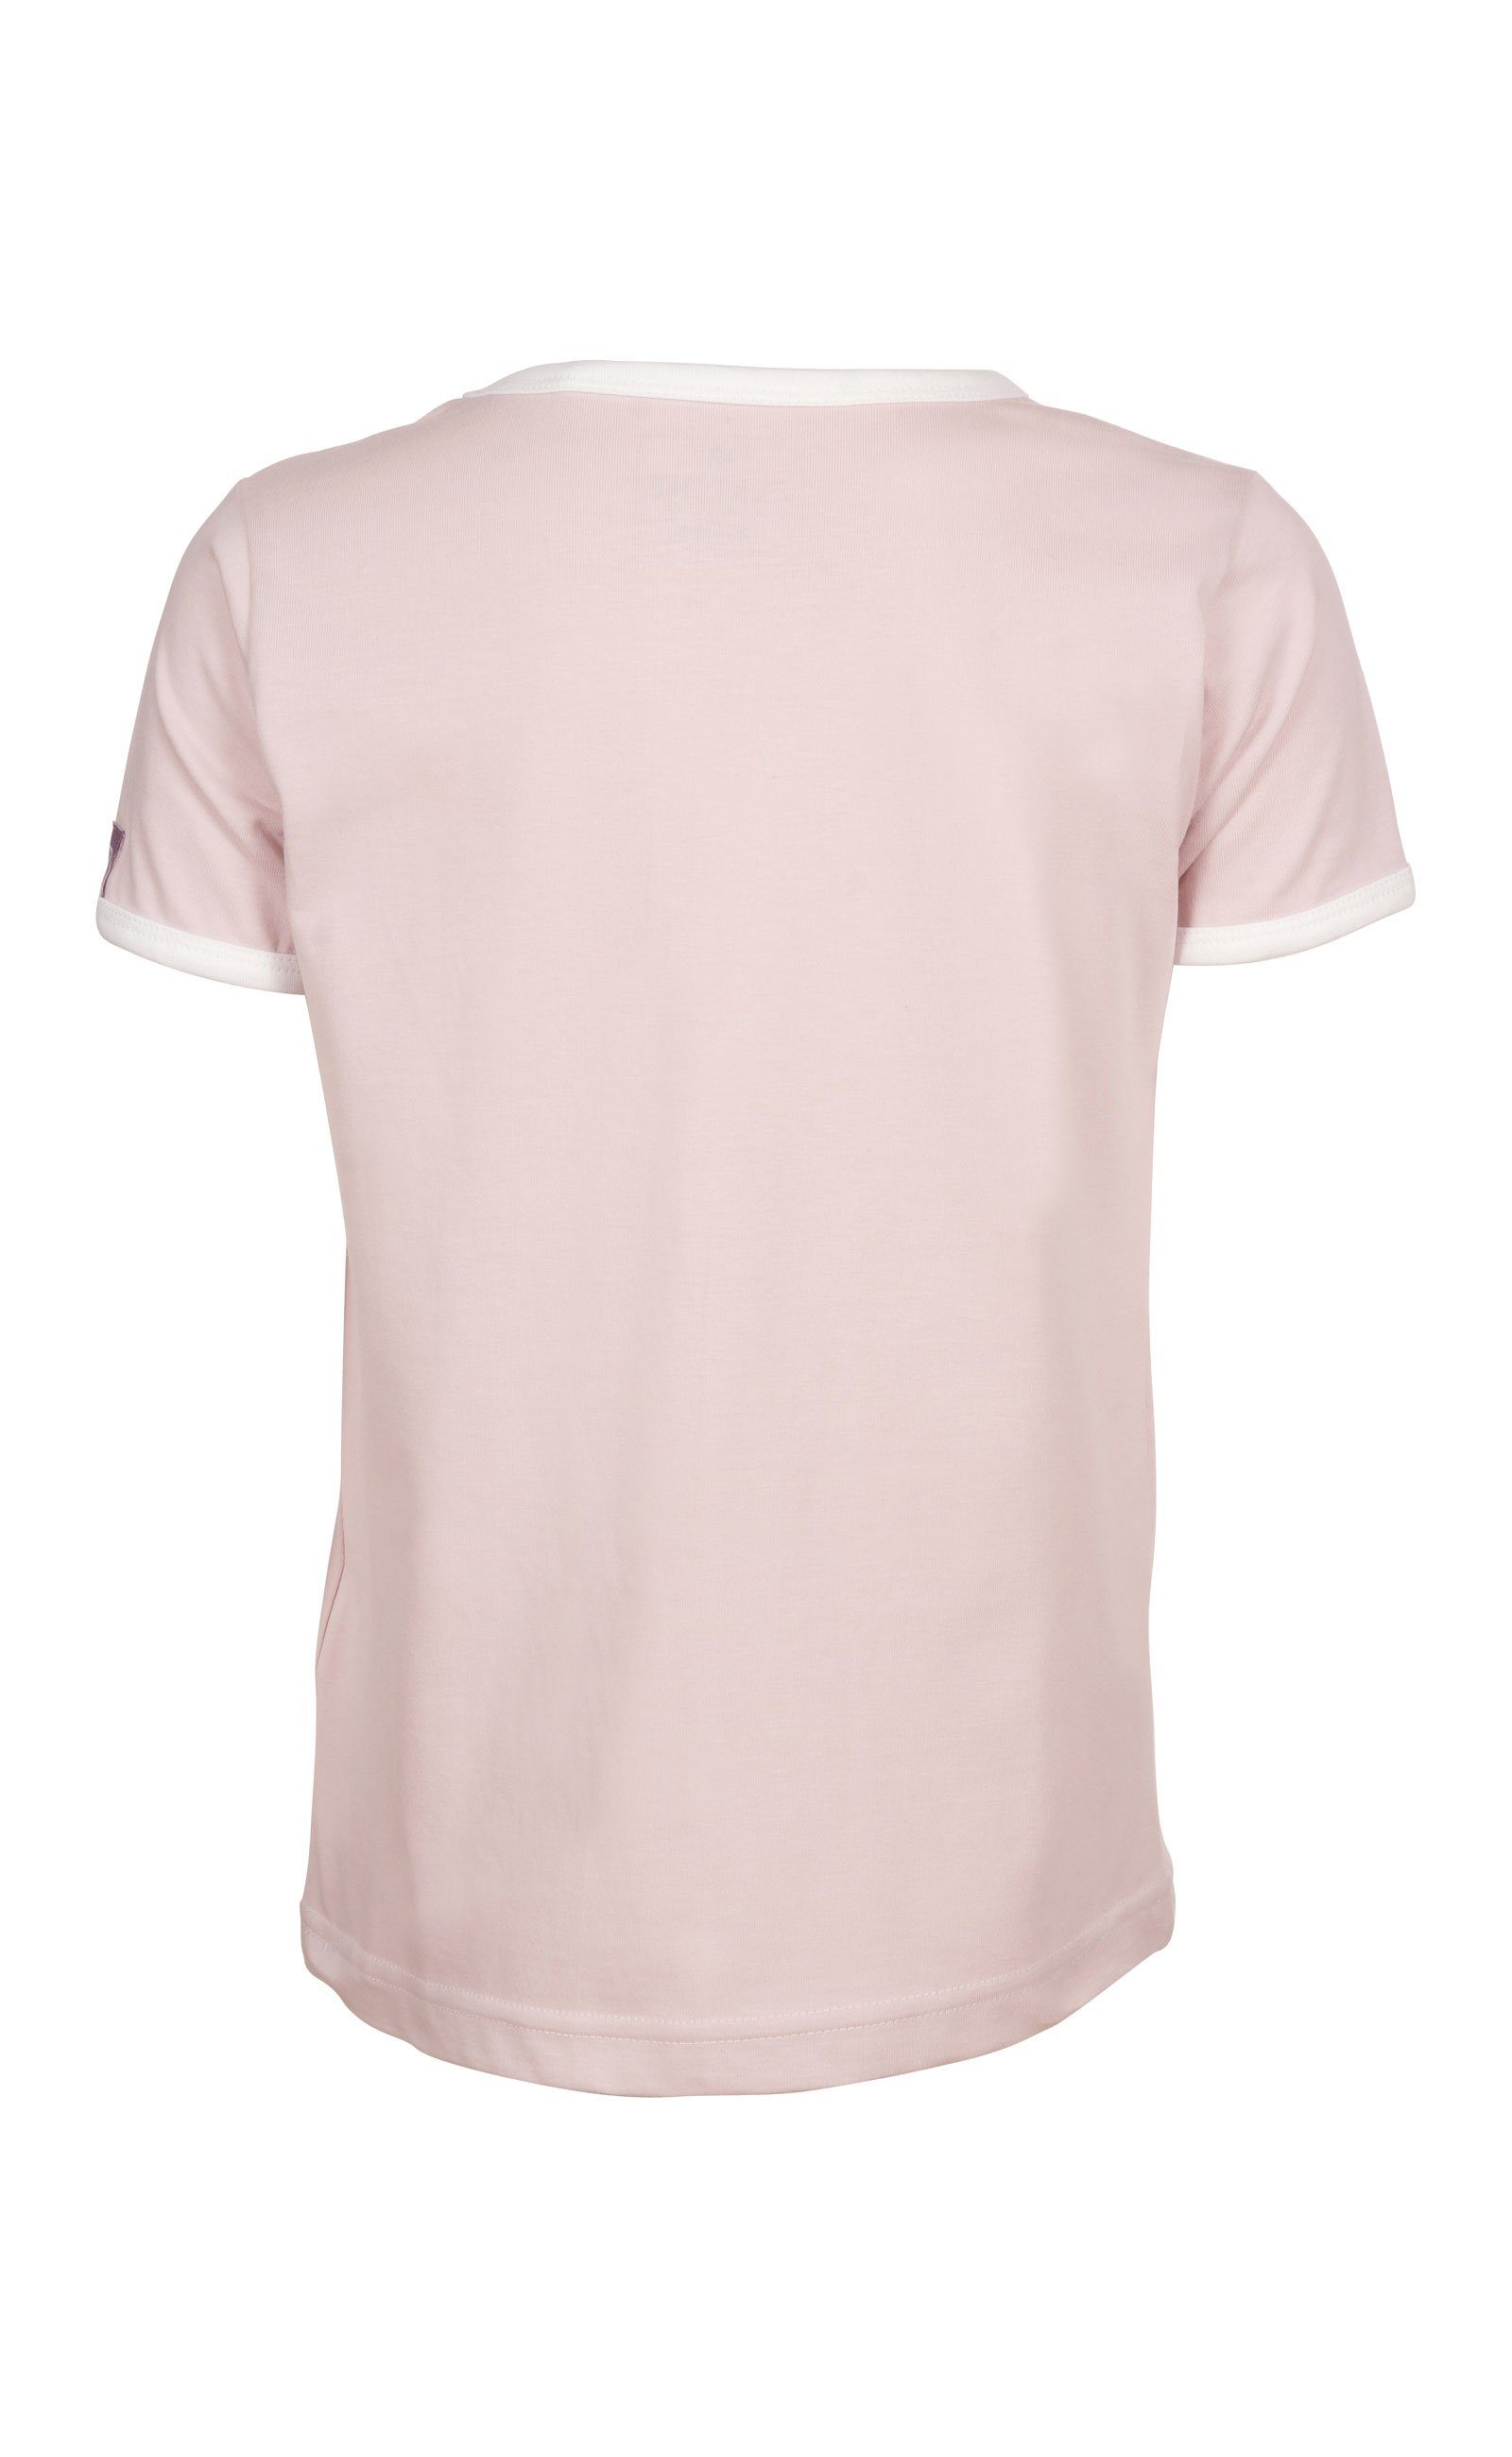 Mostwanted leichter Eis Stickerei Elkline softstone Jersey T-Shirt kleine